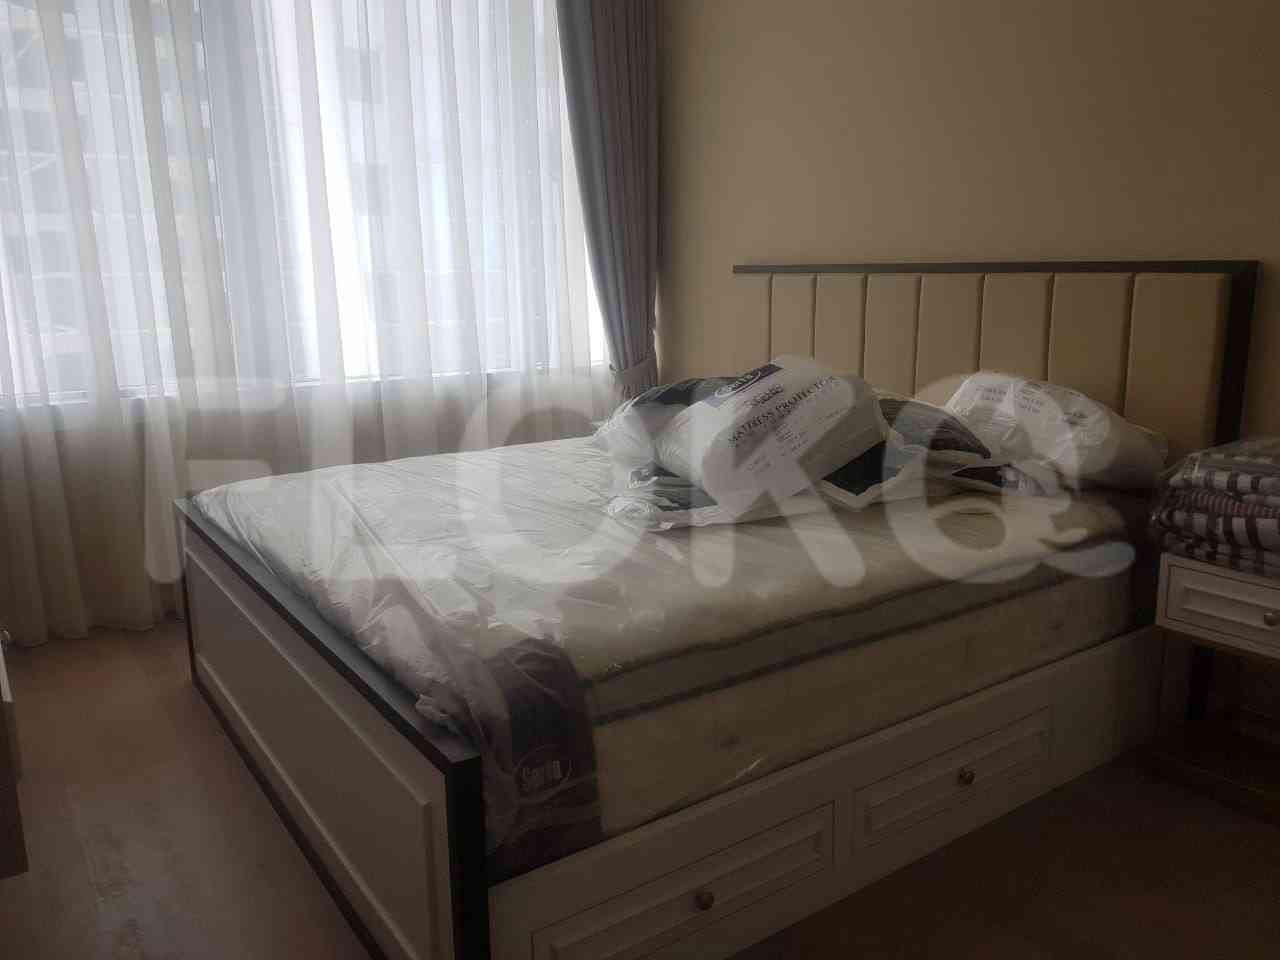 3 Bedroom on 19th Floor for Rent in Regatta - fplb9d 1